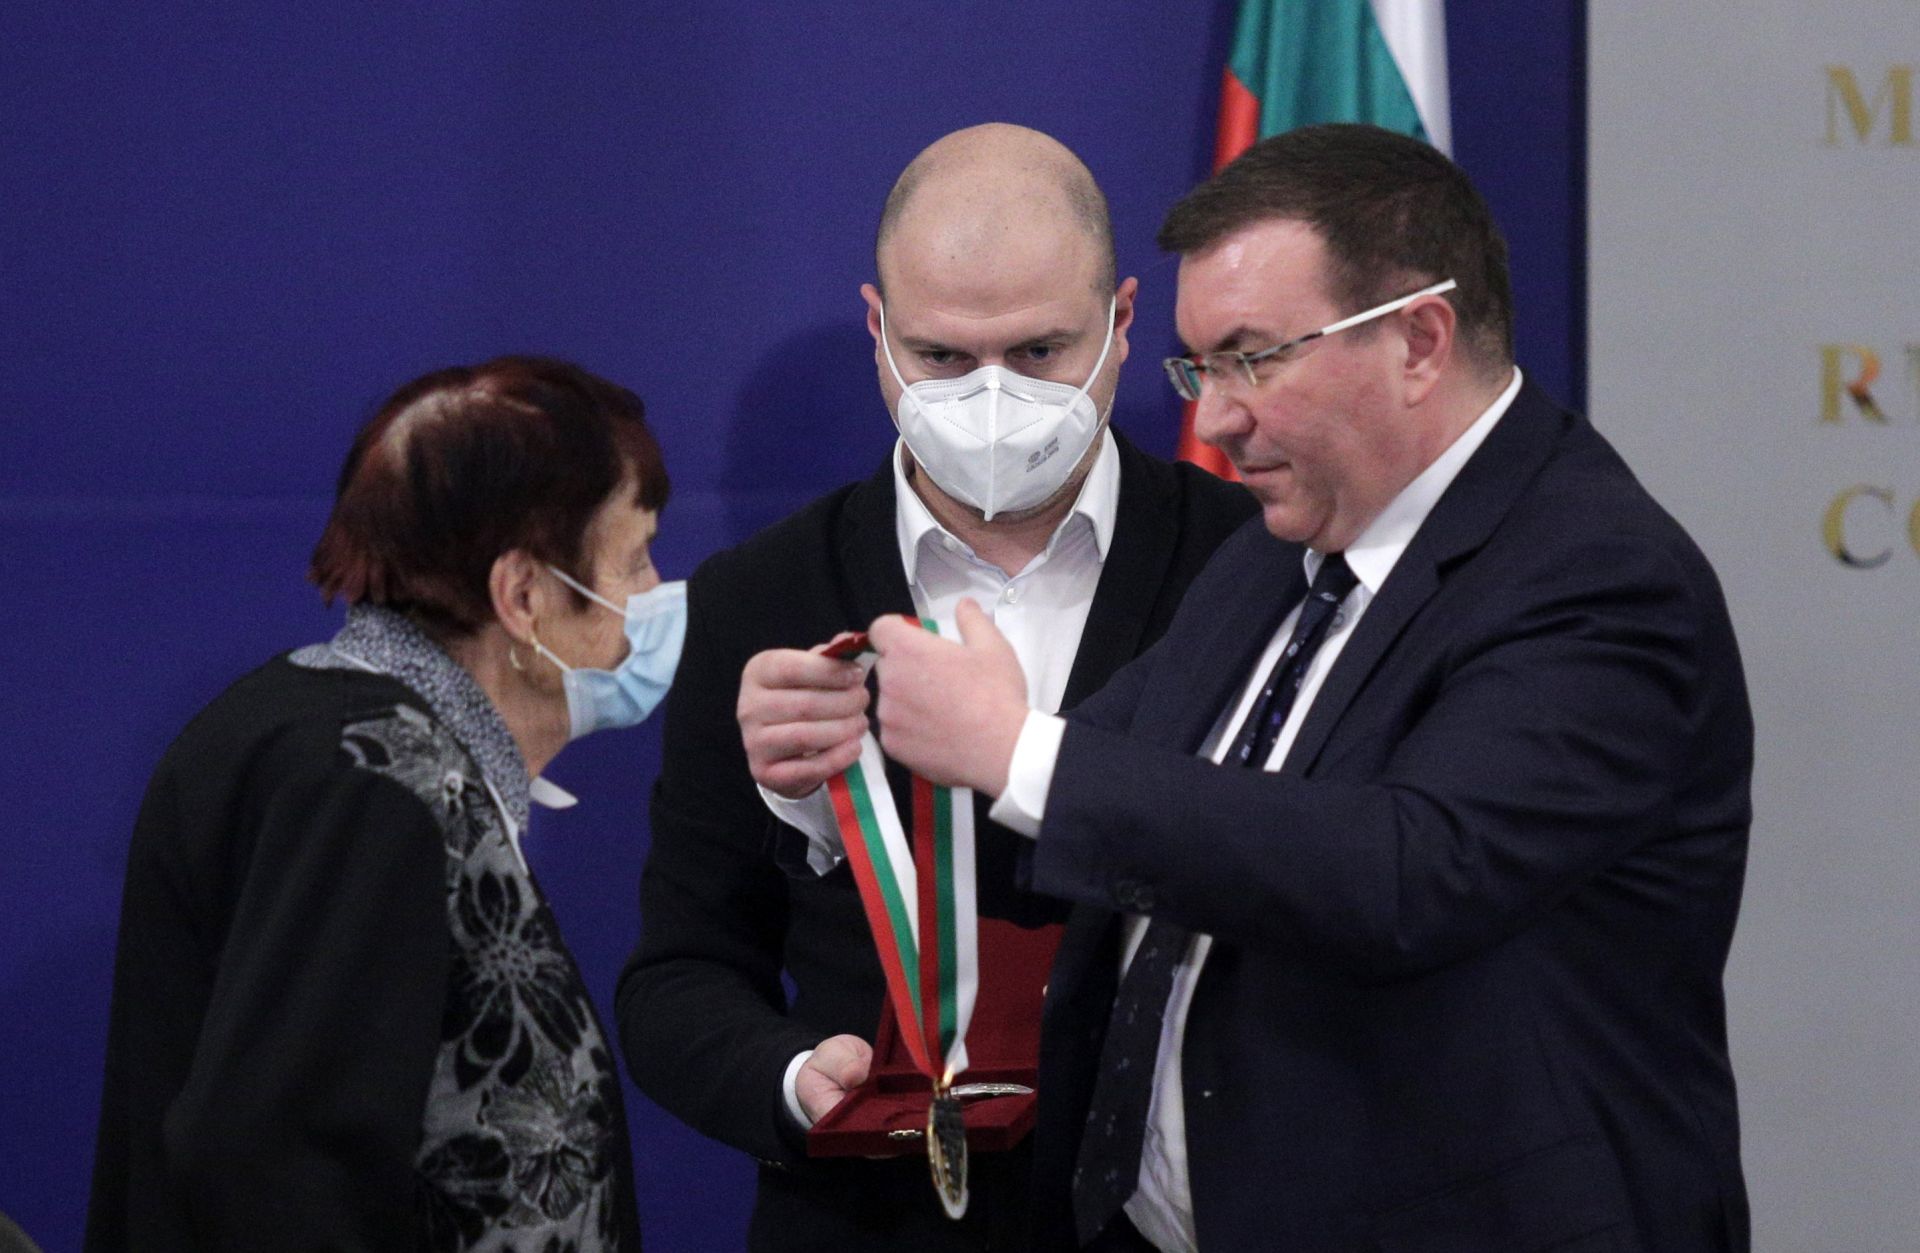 Министър Ангелов връчи почетен знак на най-възрастната работеща медицинска сестра - Ценка Досева на